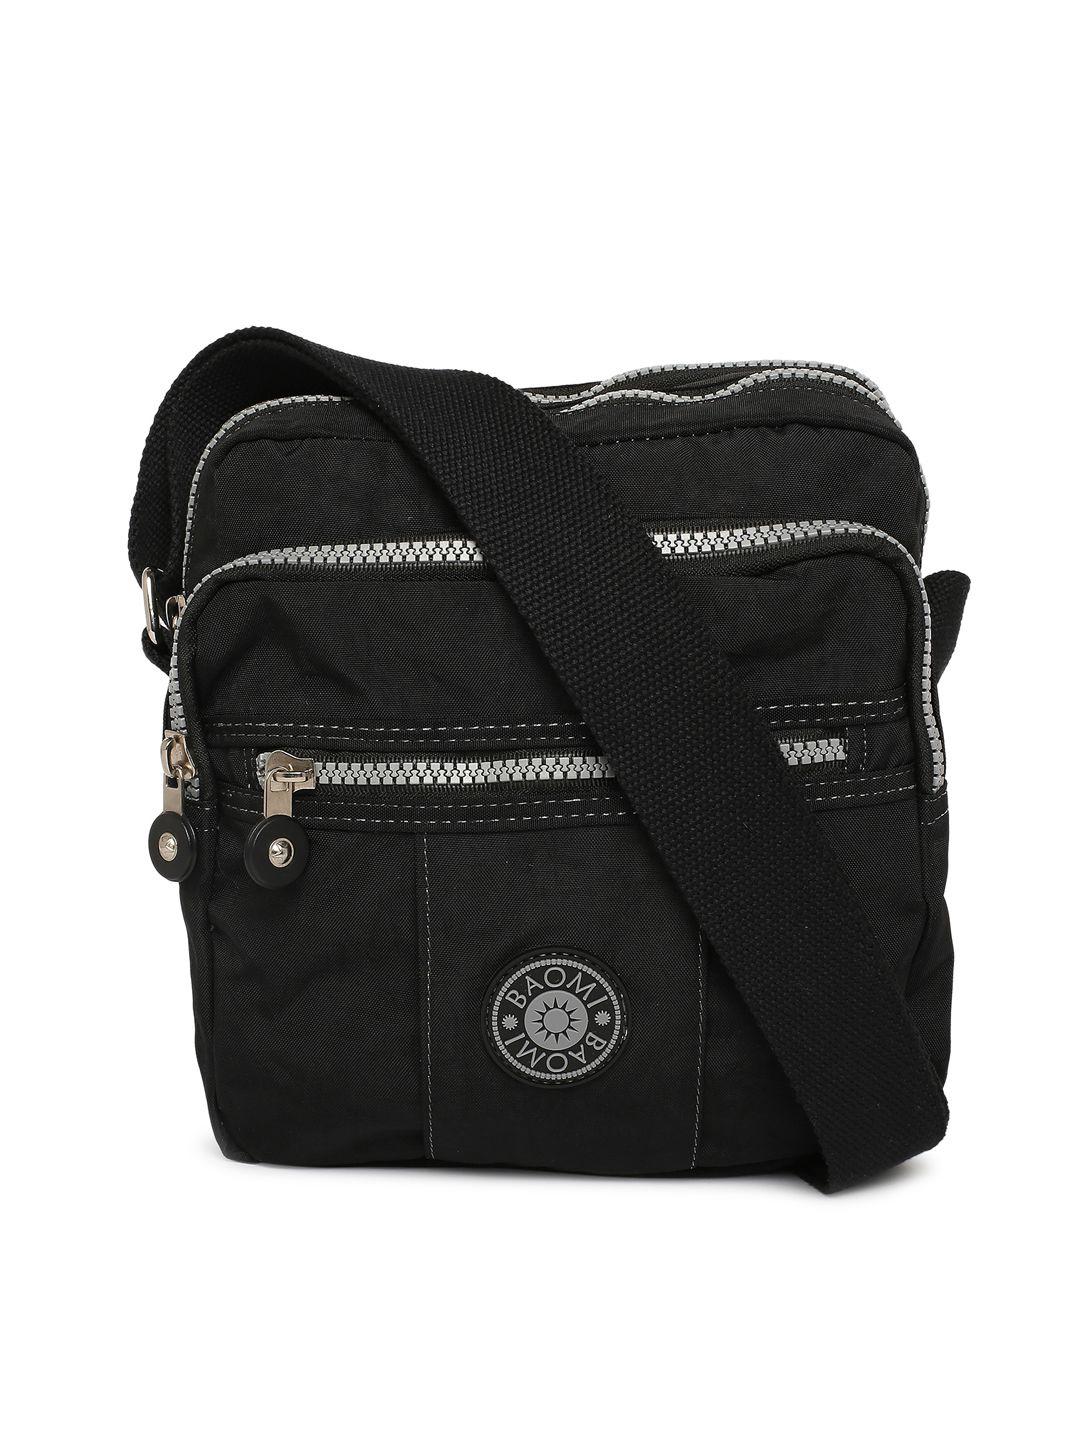 baomi black oversized structured sling bag